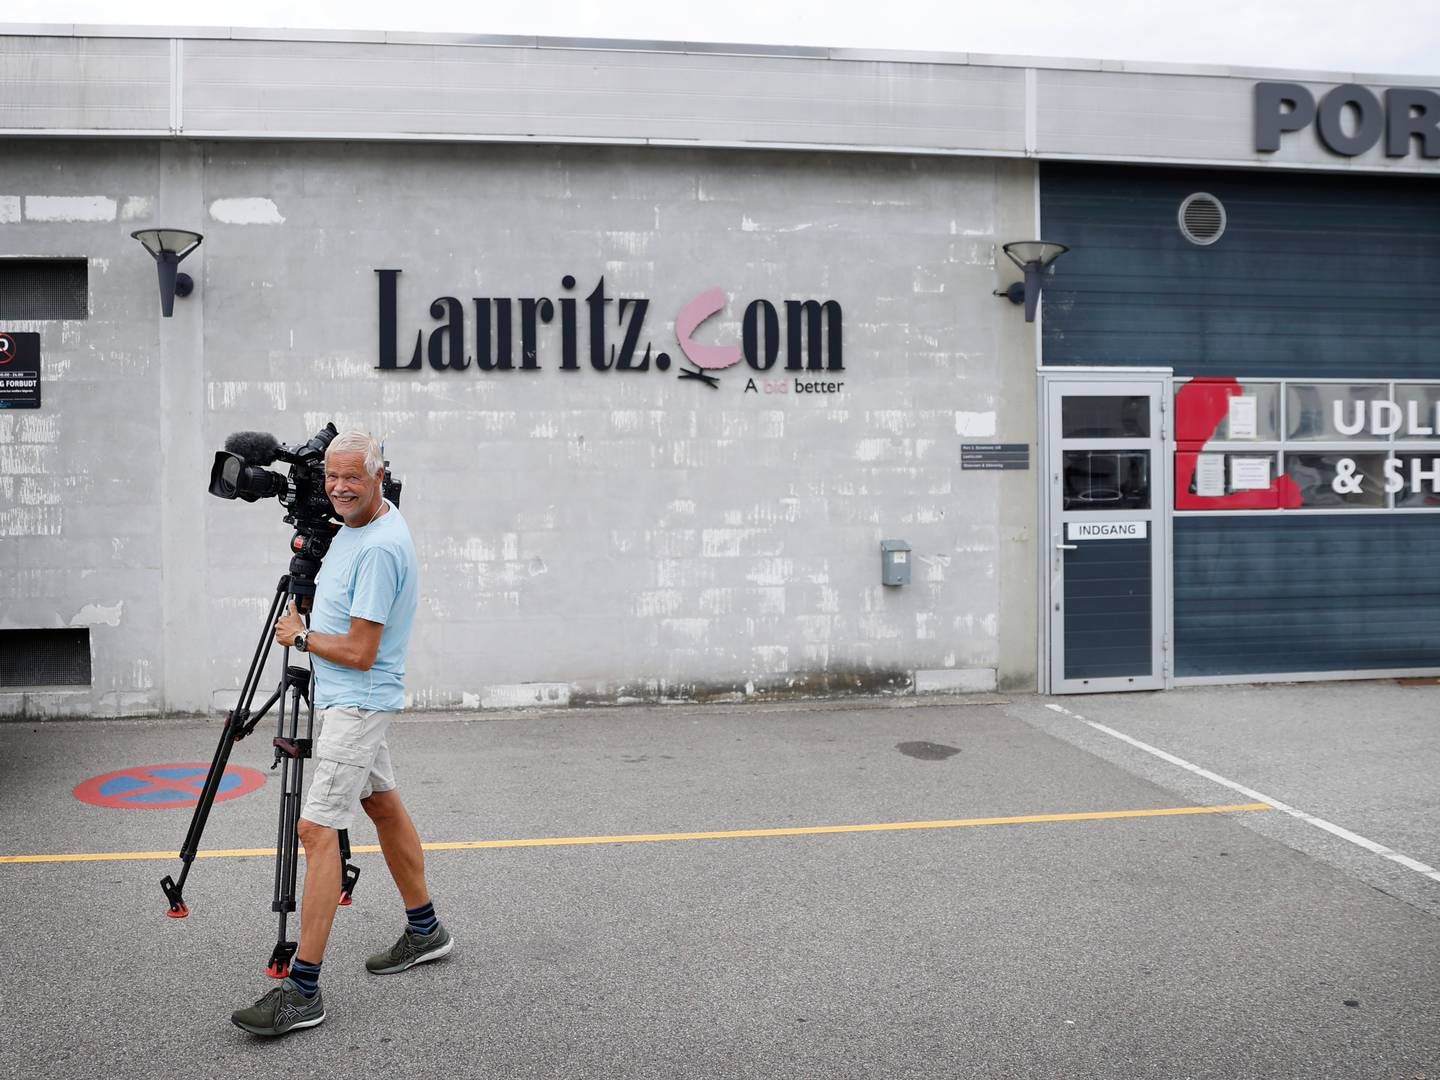 Der blev i juli afsagt konkursdekret over det kendte auktionshus Lauritz.com, hvis skæbne har fyldt meget i mediebilledet lige siden. | Foto: Jens Dresling